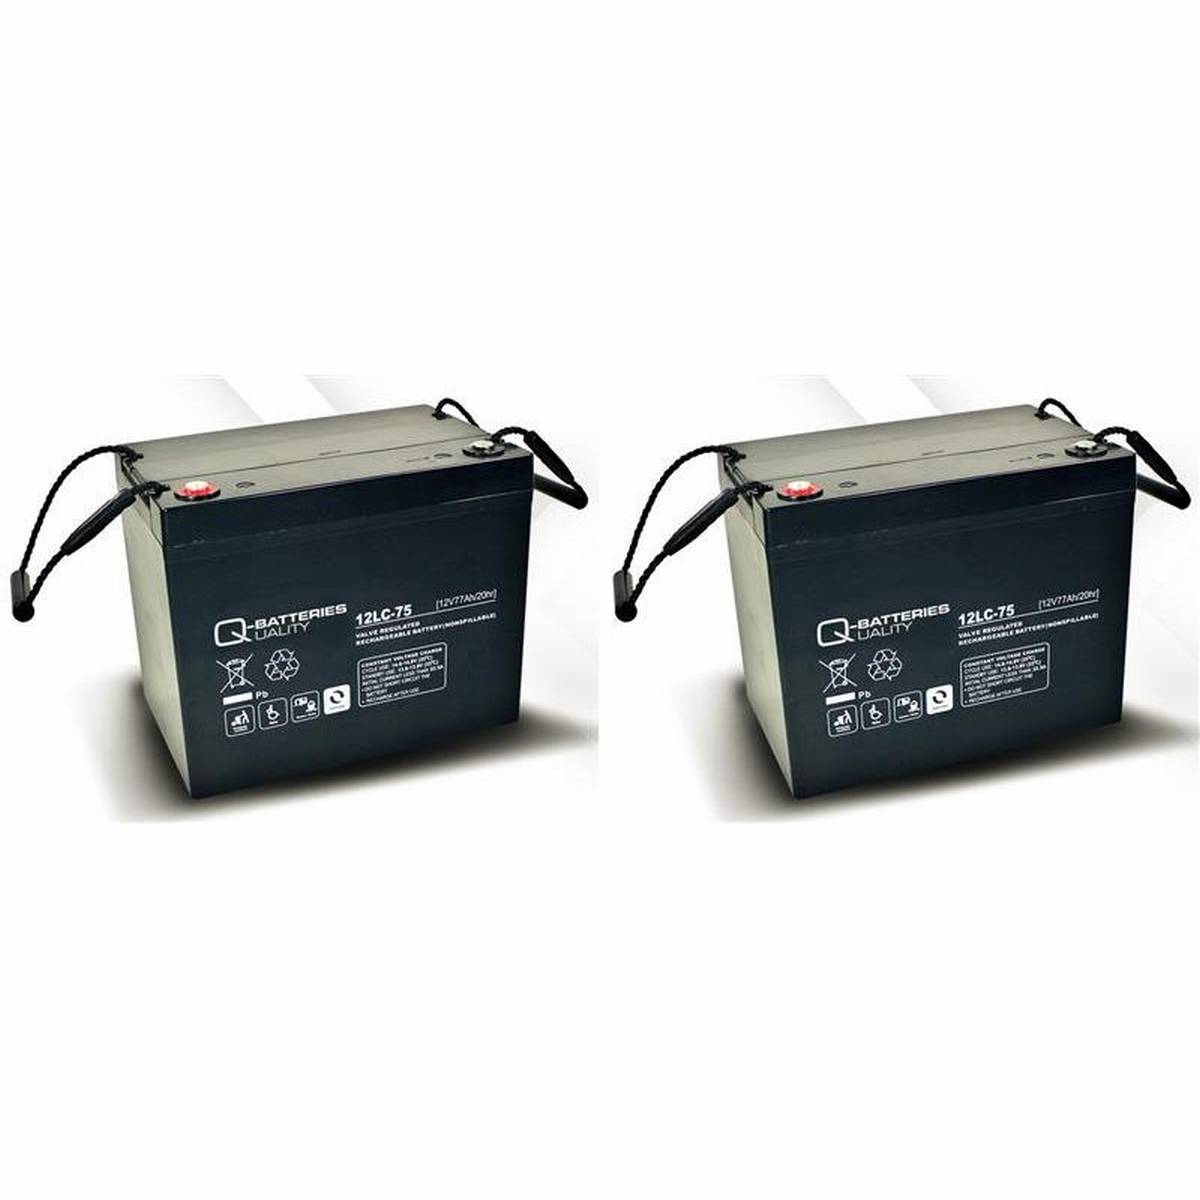 Batteria di ricambio per Invacare Garant 2 pezzi Q-Batteries 12LC-75 12V 77Ah AGM batteria resistente al ciclo